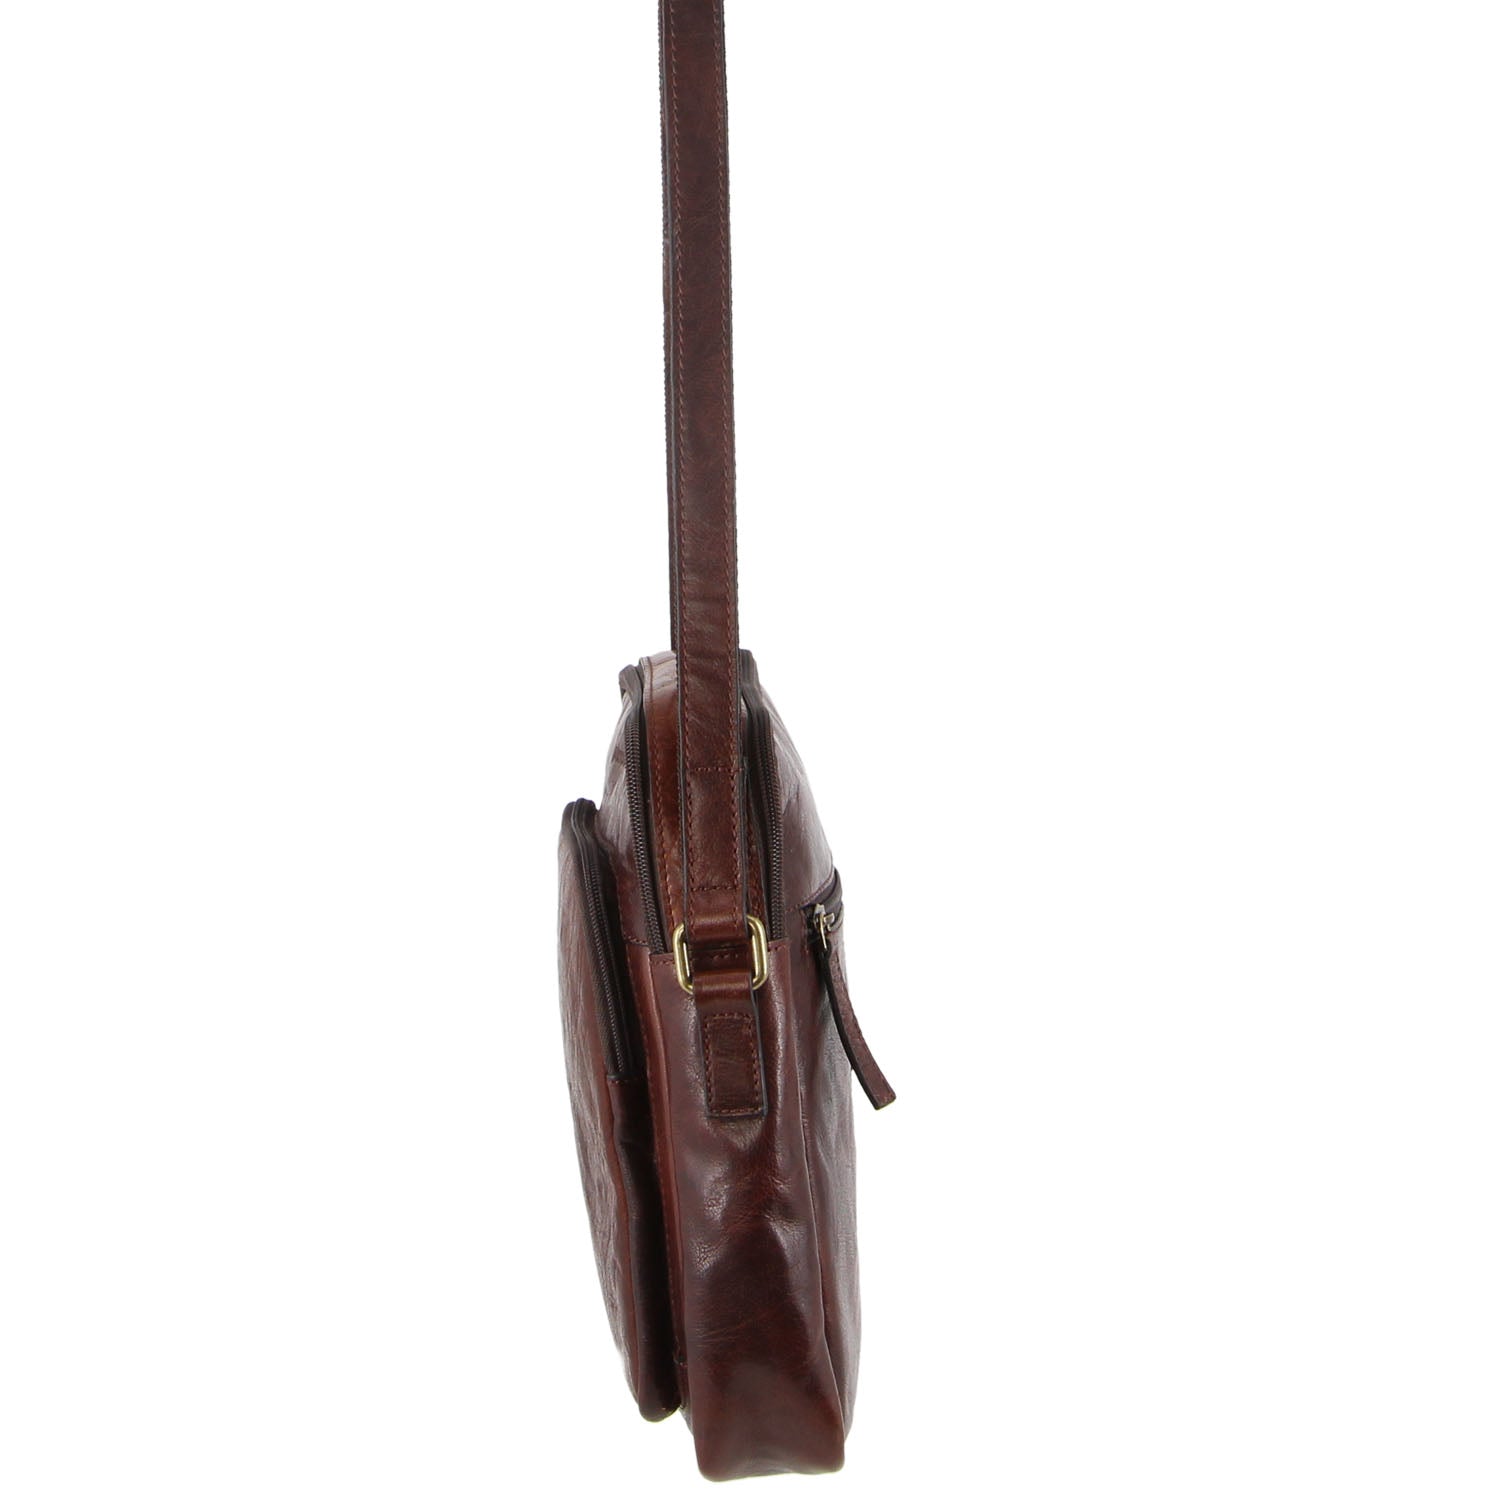 Pierre Cardin Leather Unisex Cross-Body Bag in Chestnut